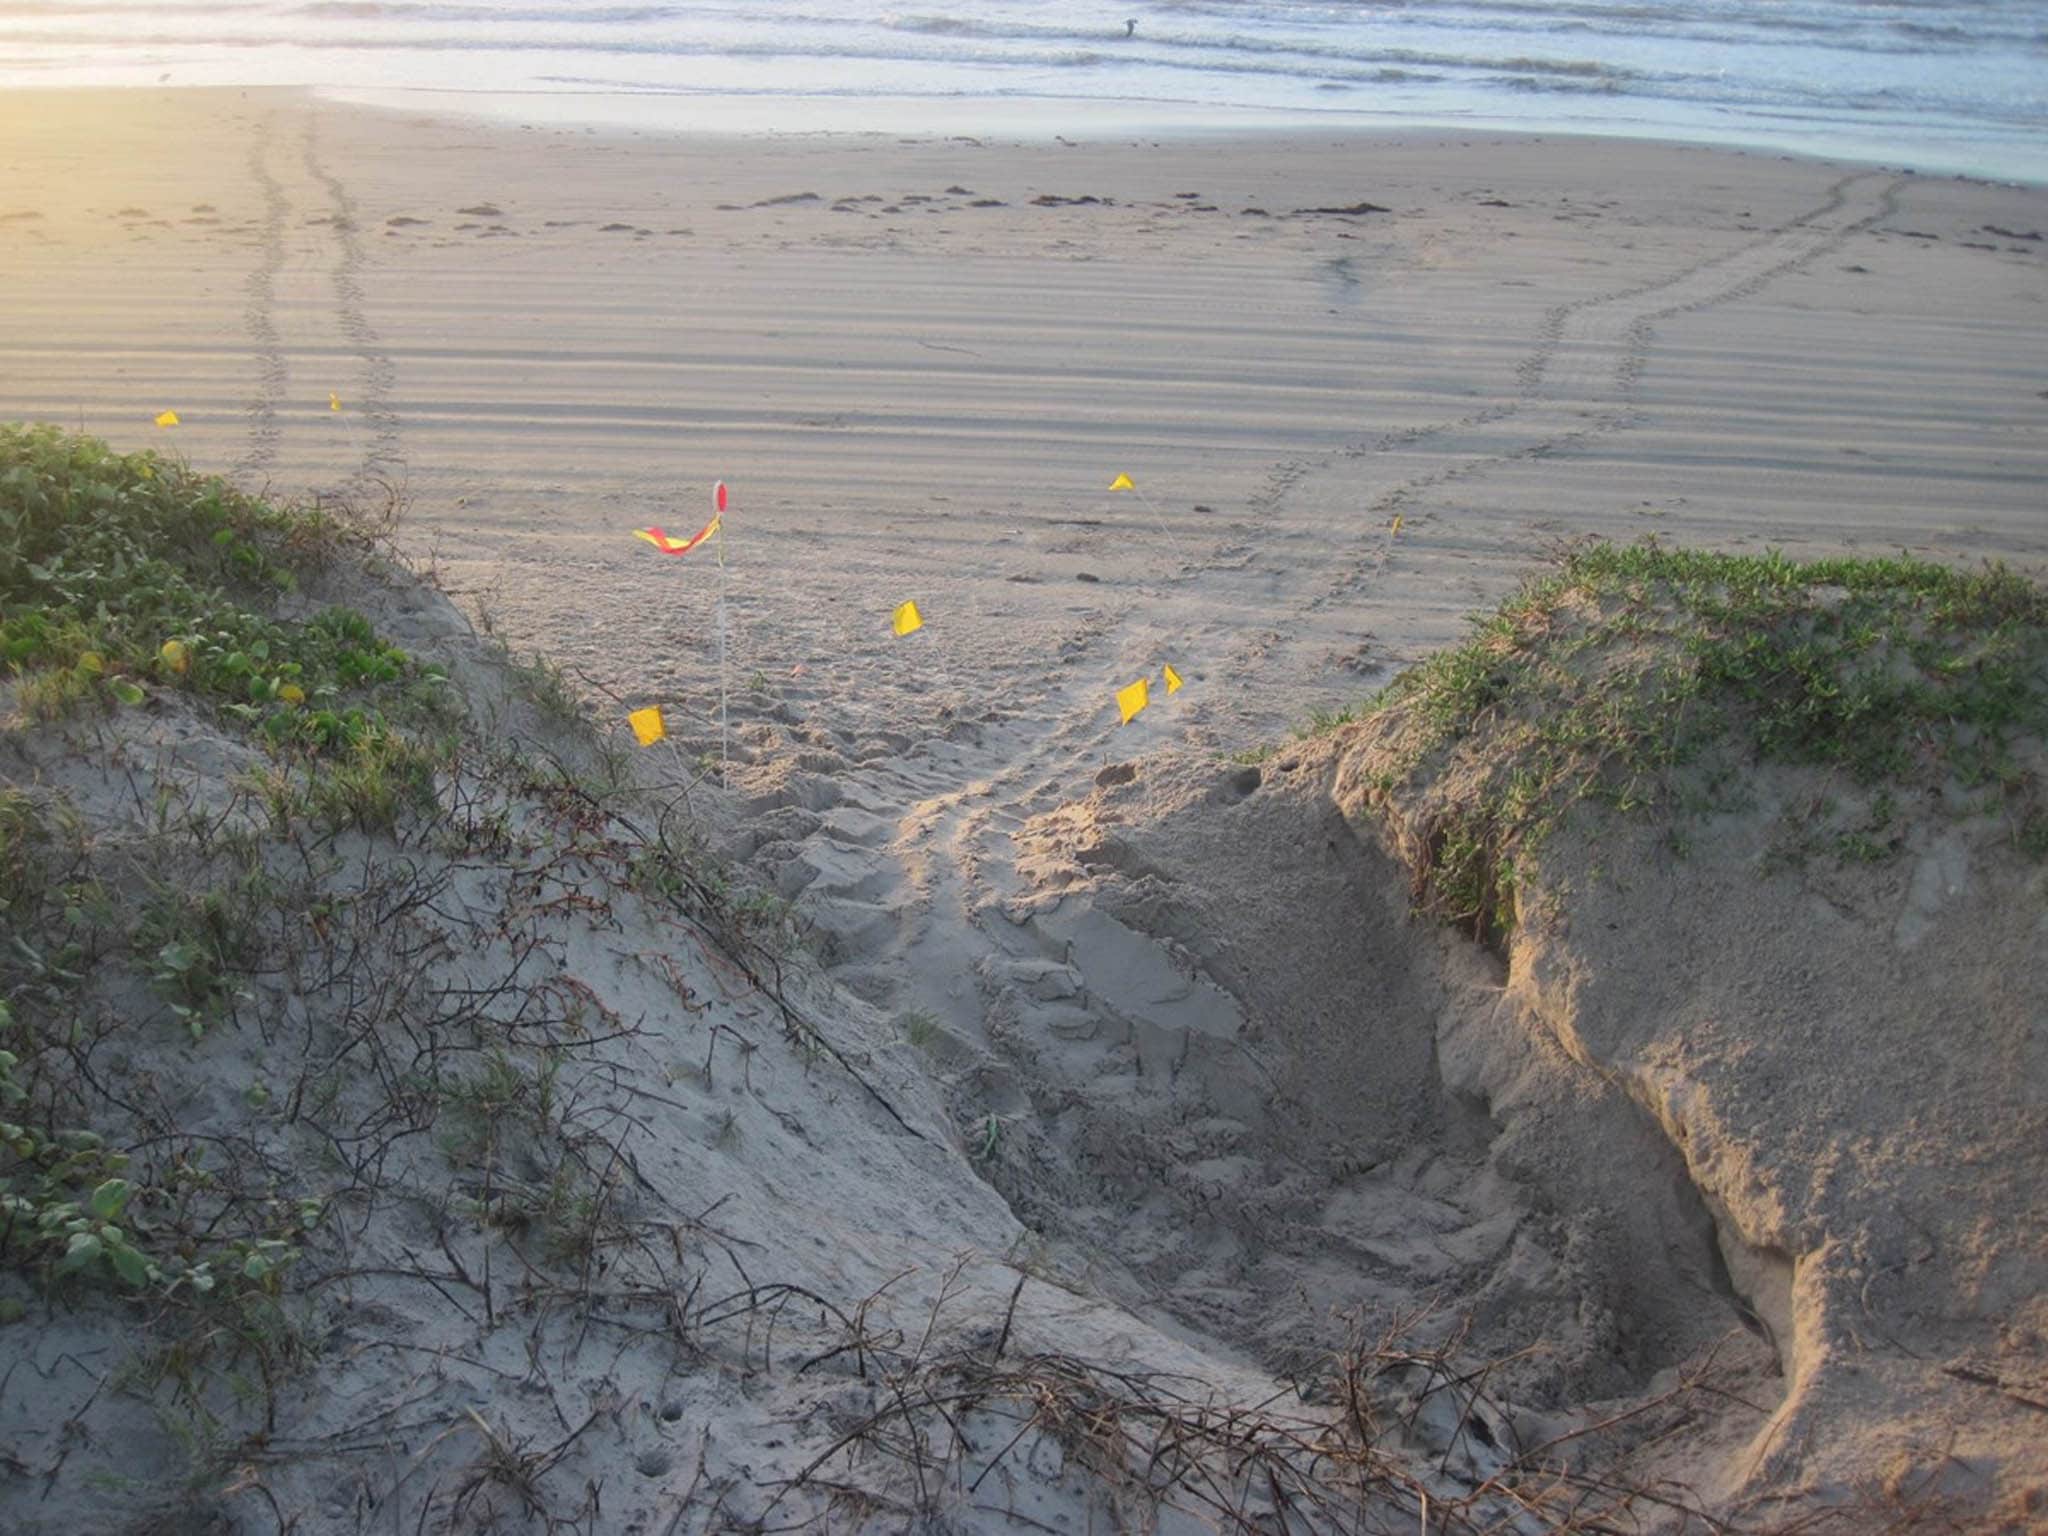 Sea turtle tracks